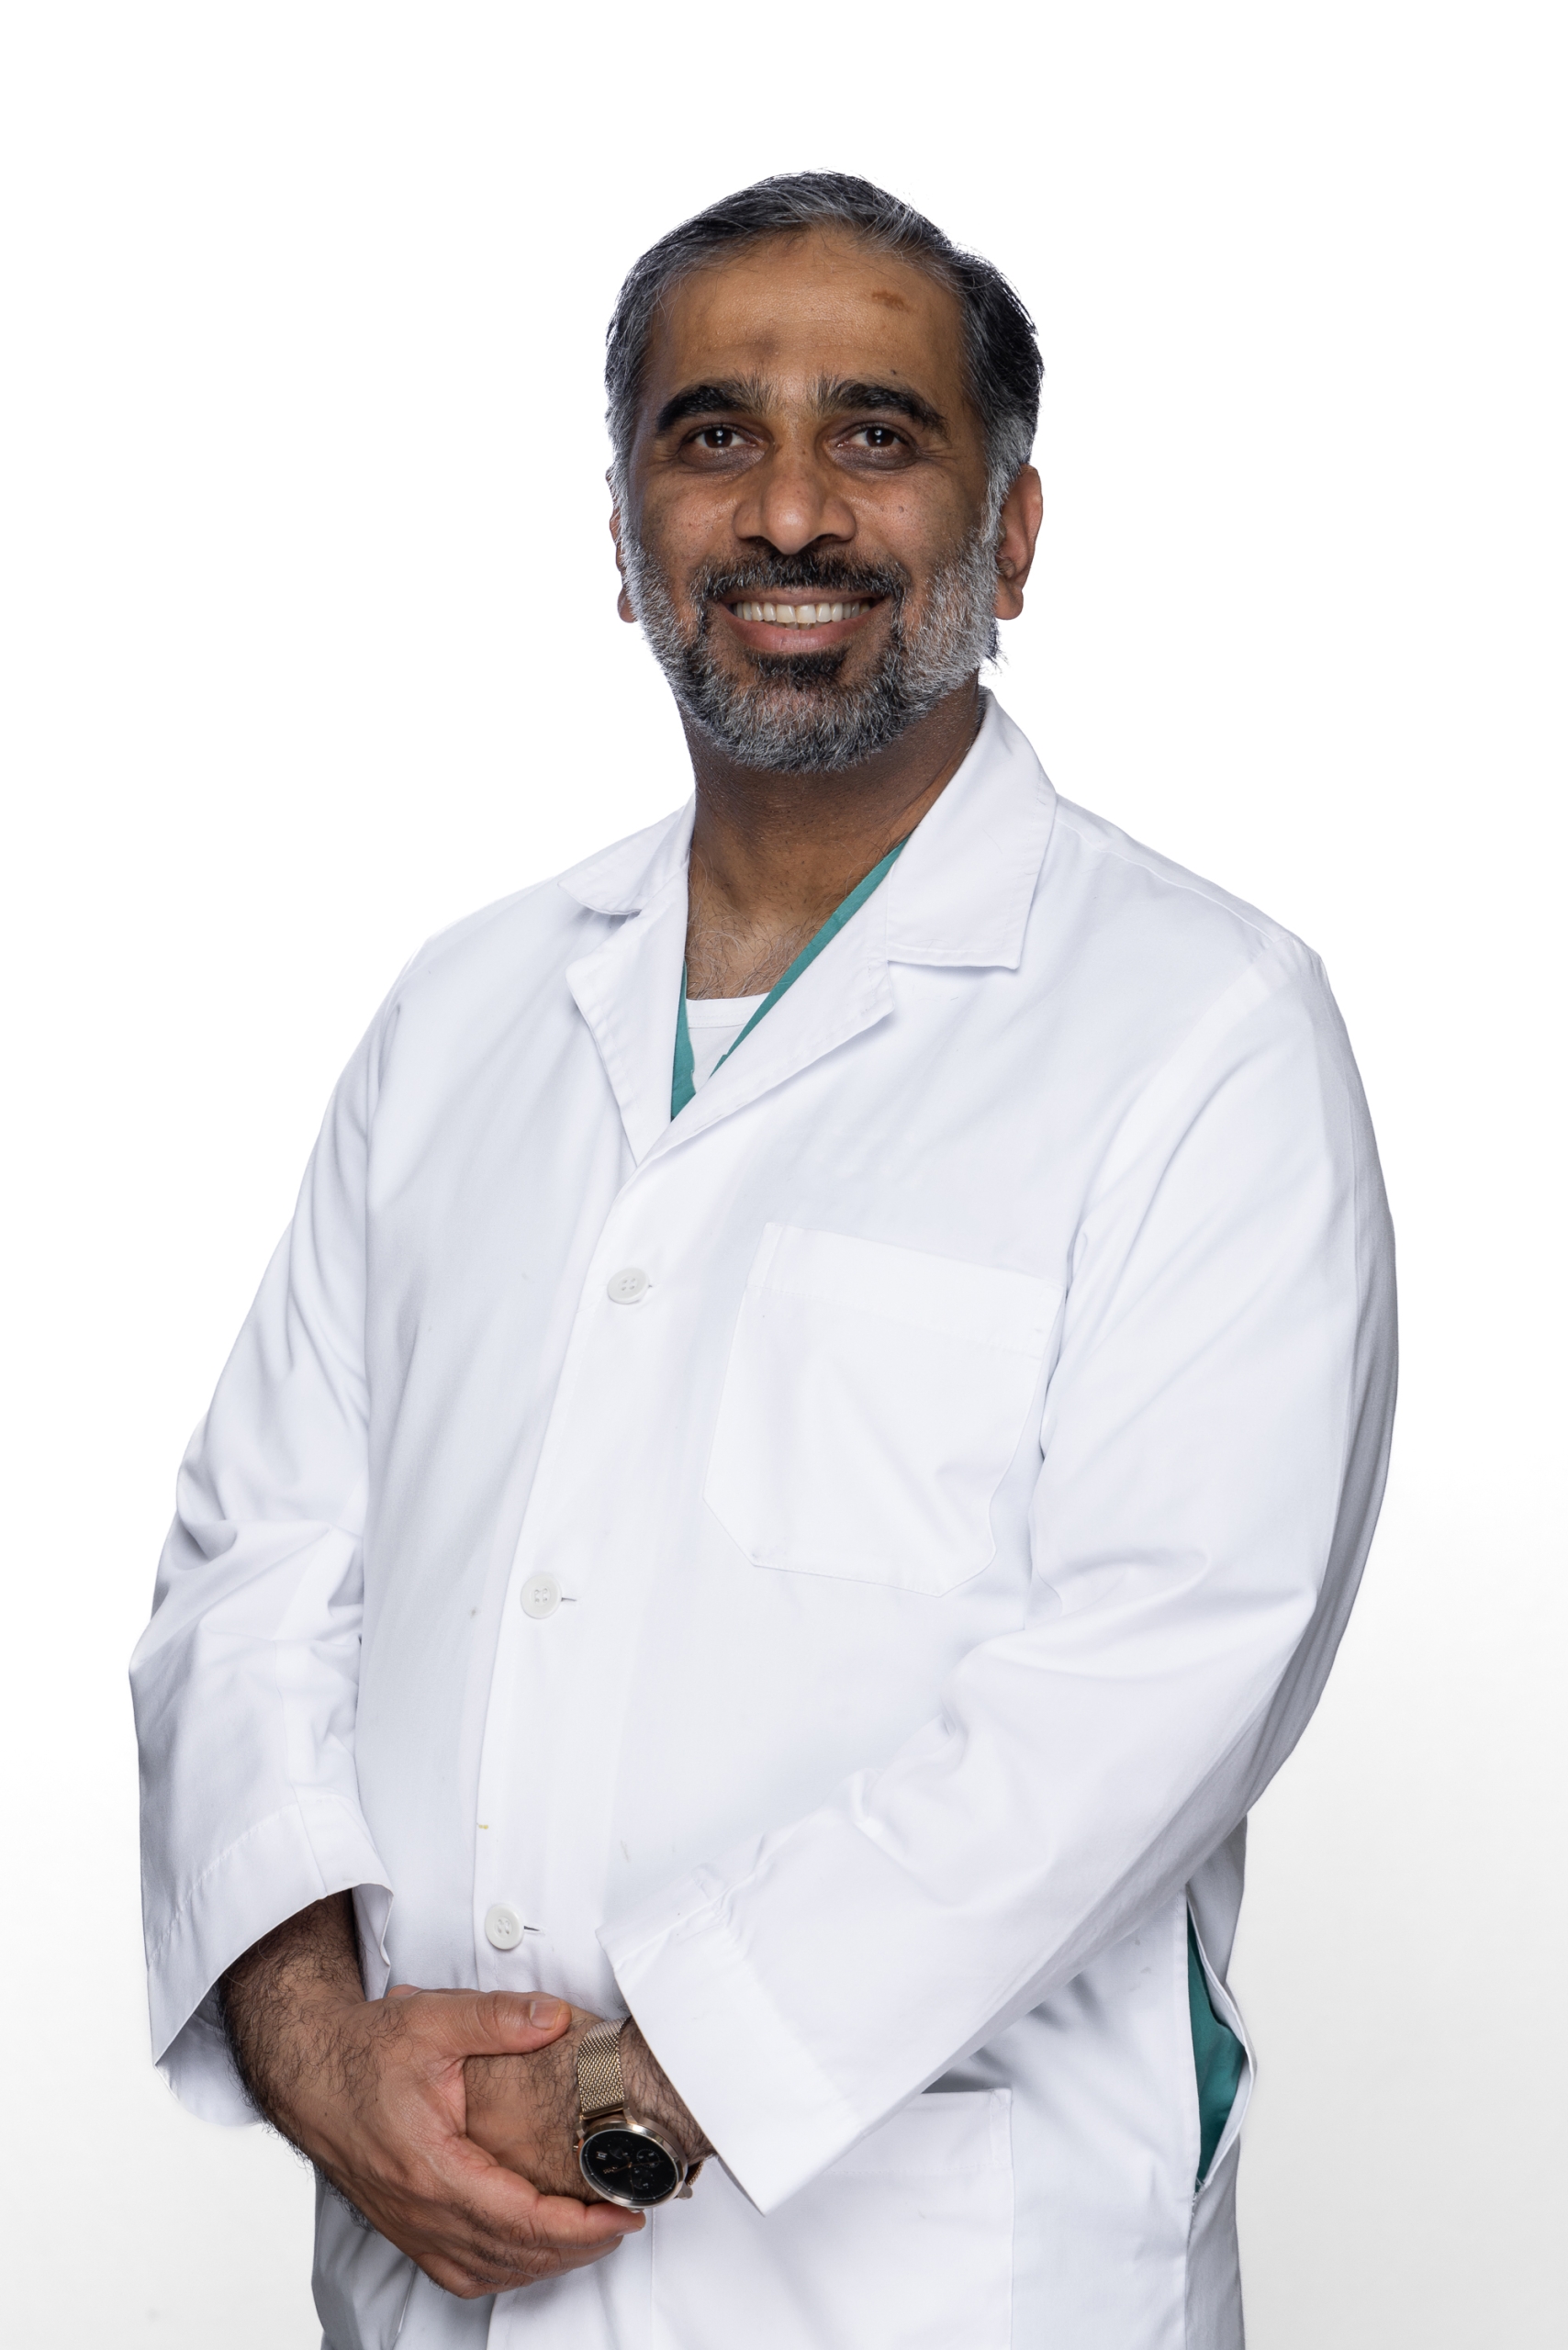 Dr. Ali Abdulla Ali Khammas Yammahi